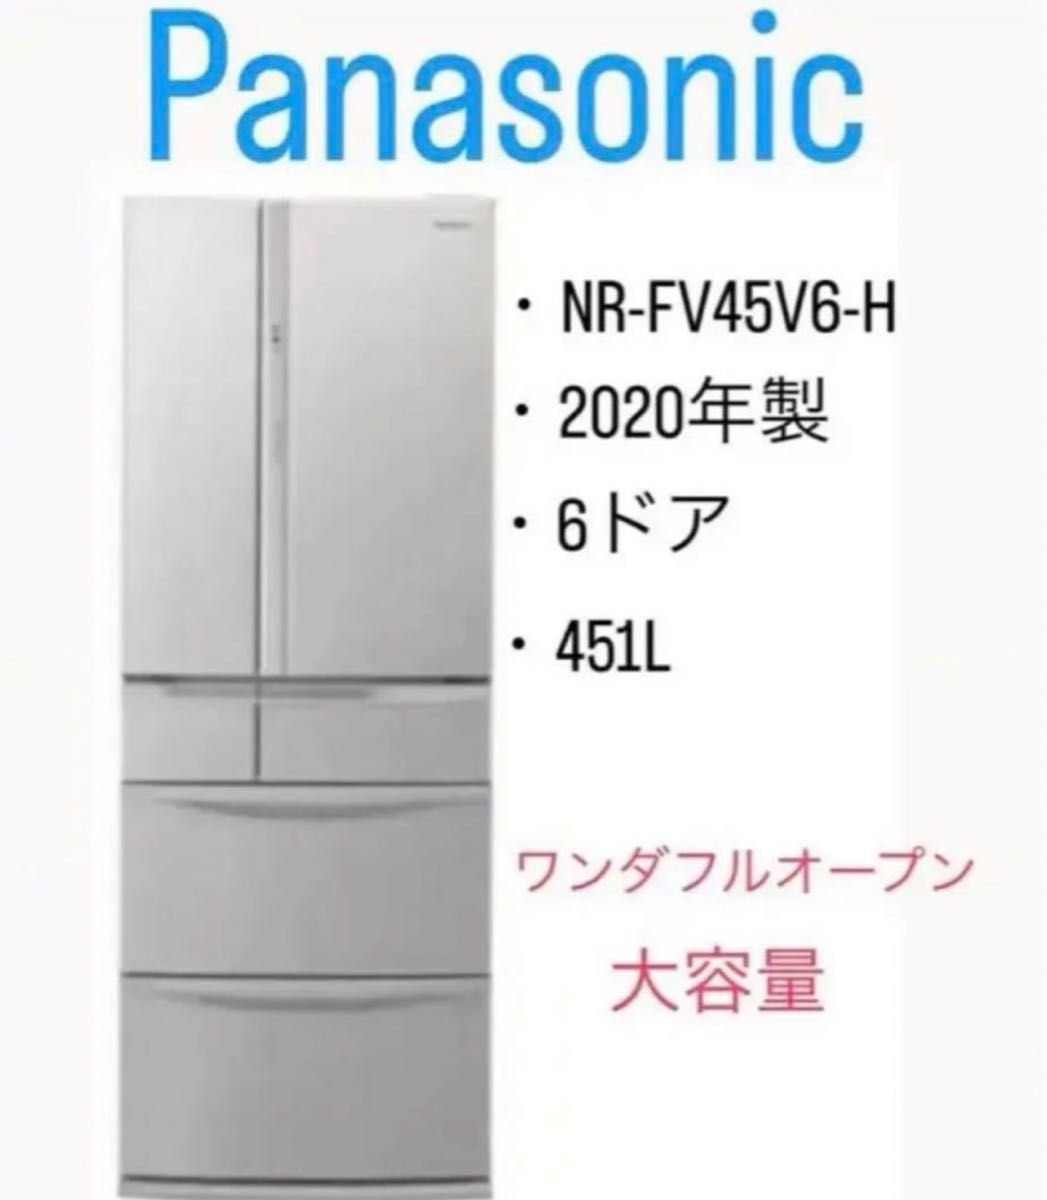 パナソニック 冷蔵冷凍庫・451L・6ドア